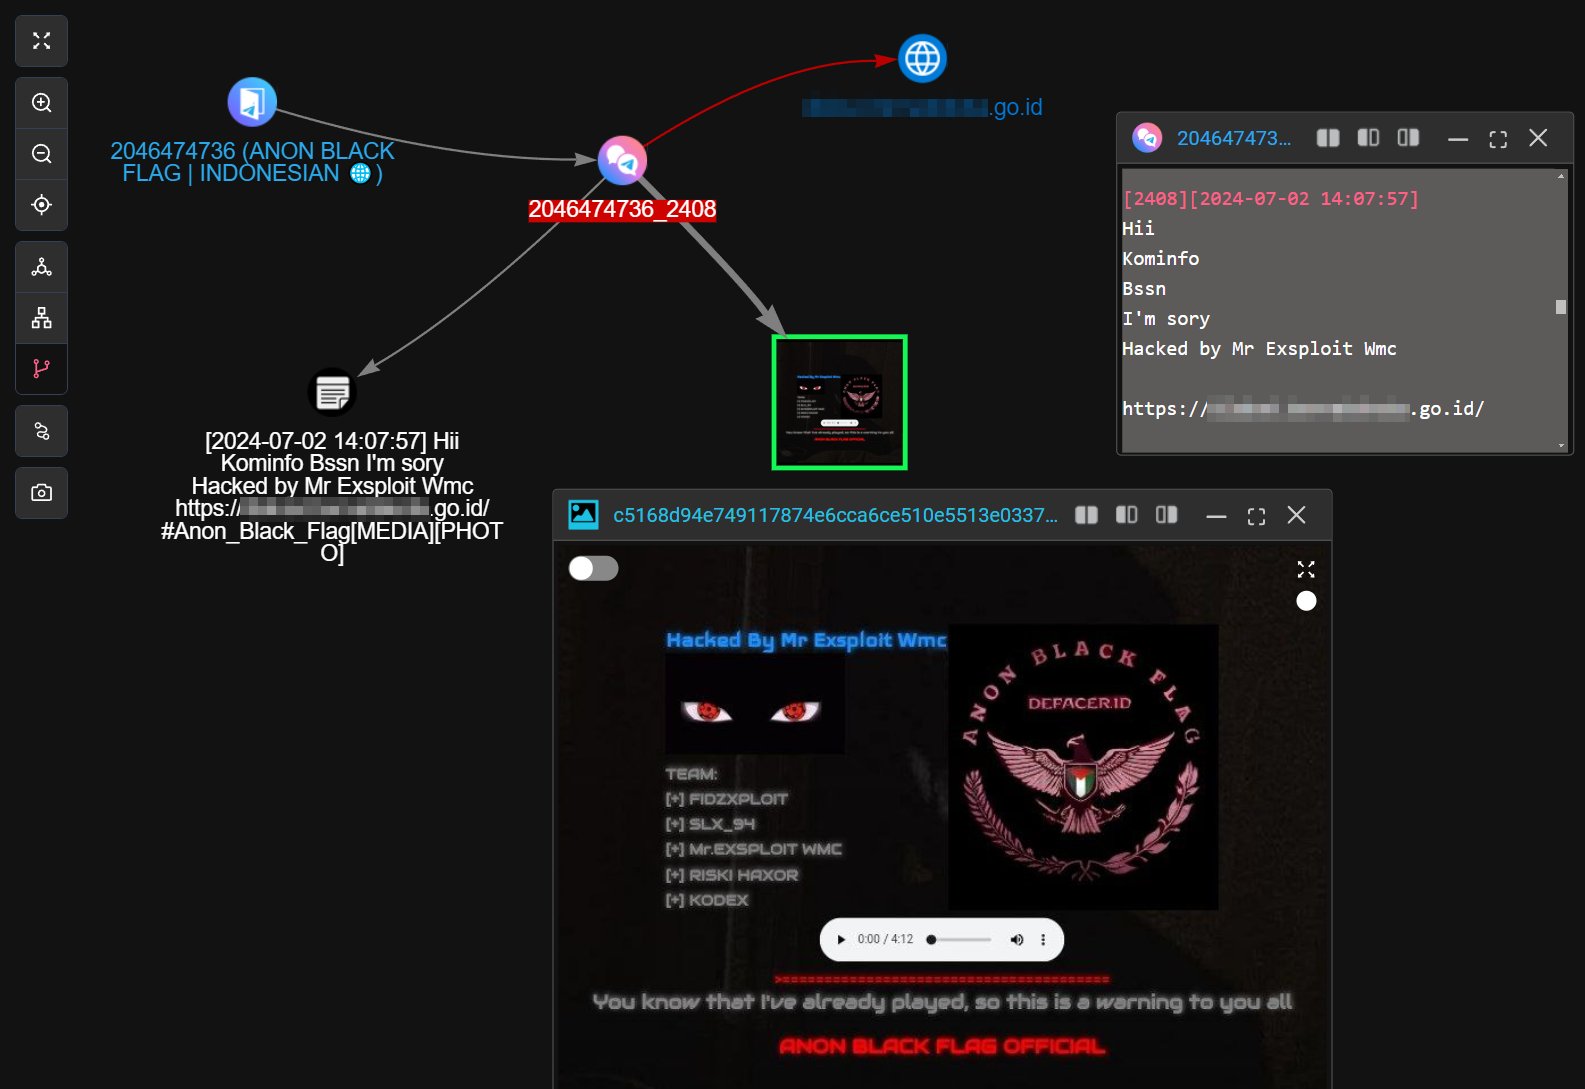 Identitas Hacker PDNS 2: 'Mr Exploit Wmc' Muncul Sebagai Pelaku Utama